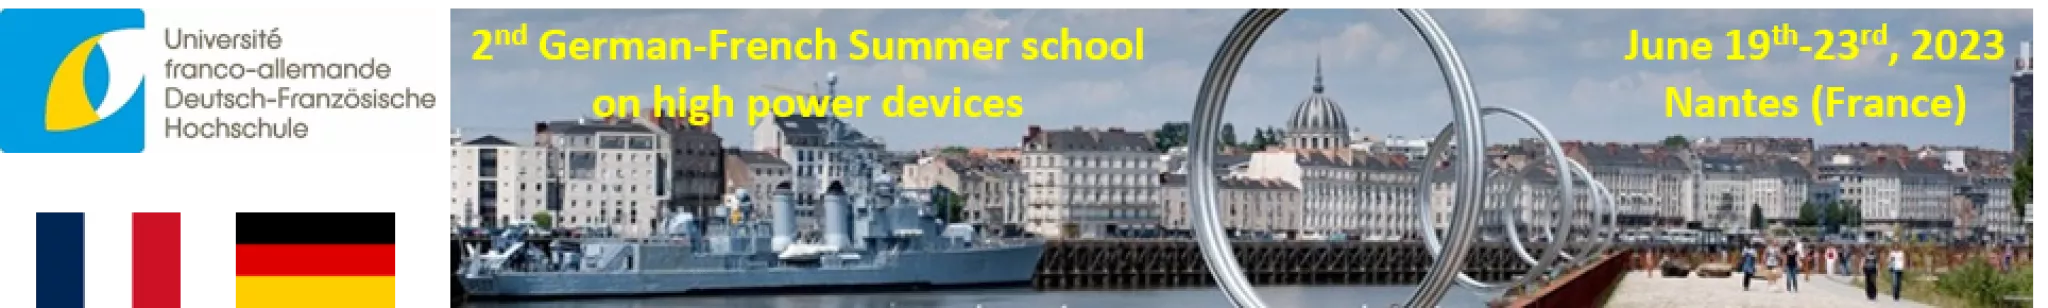 Ecole d'été franco-allemande